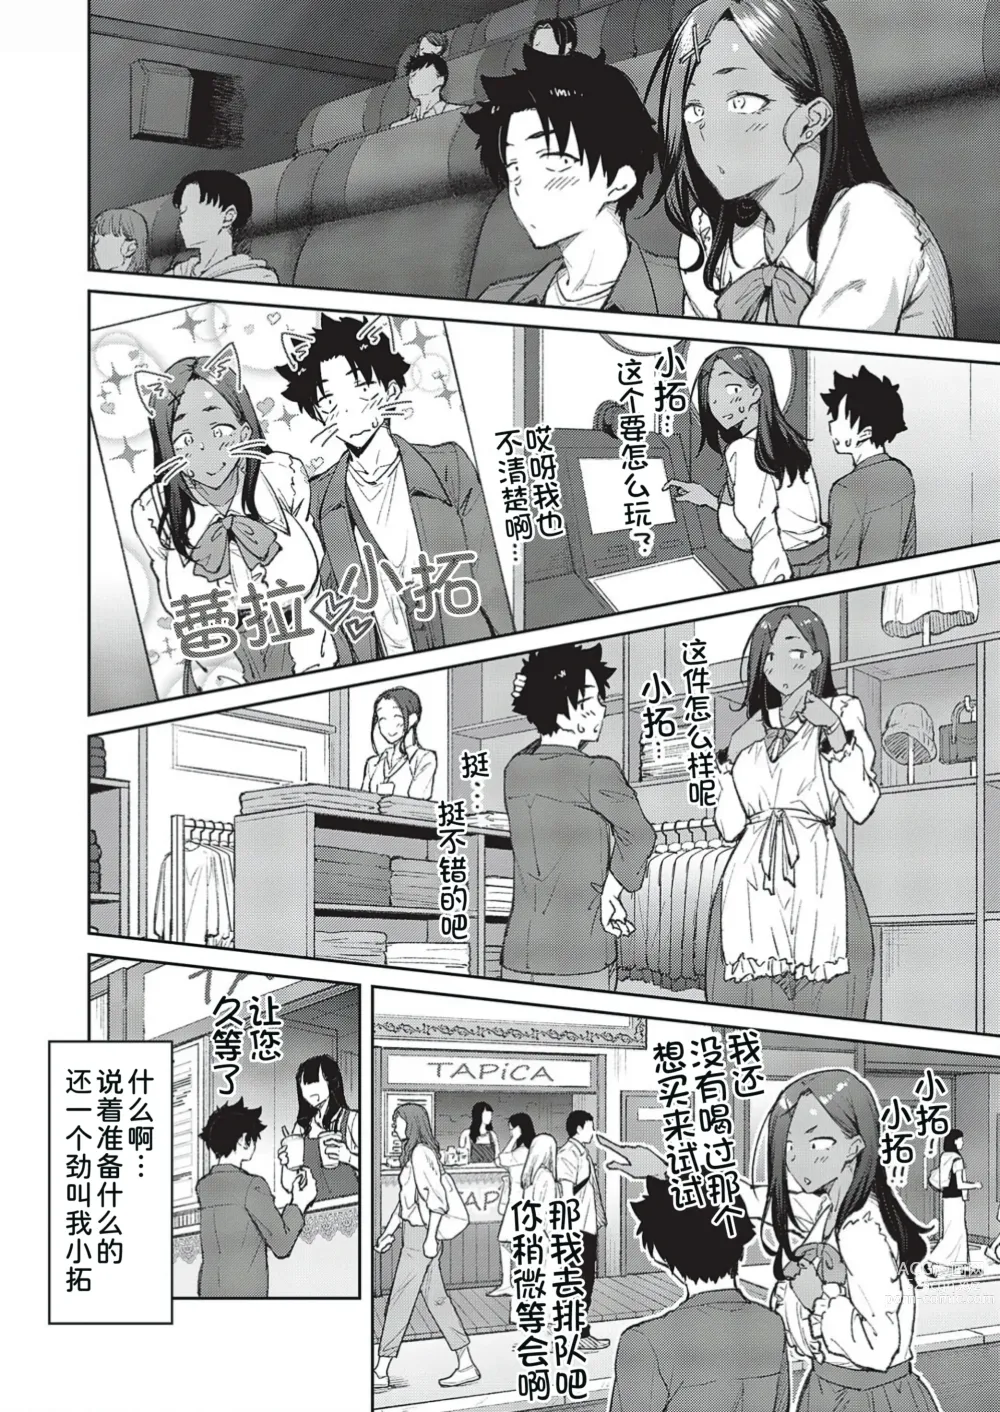 Page 9 of manga Tachiaoi 3